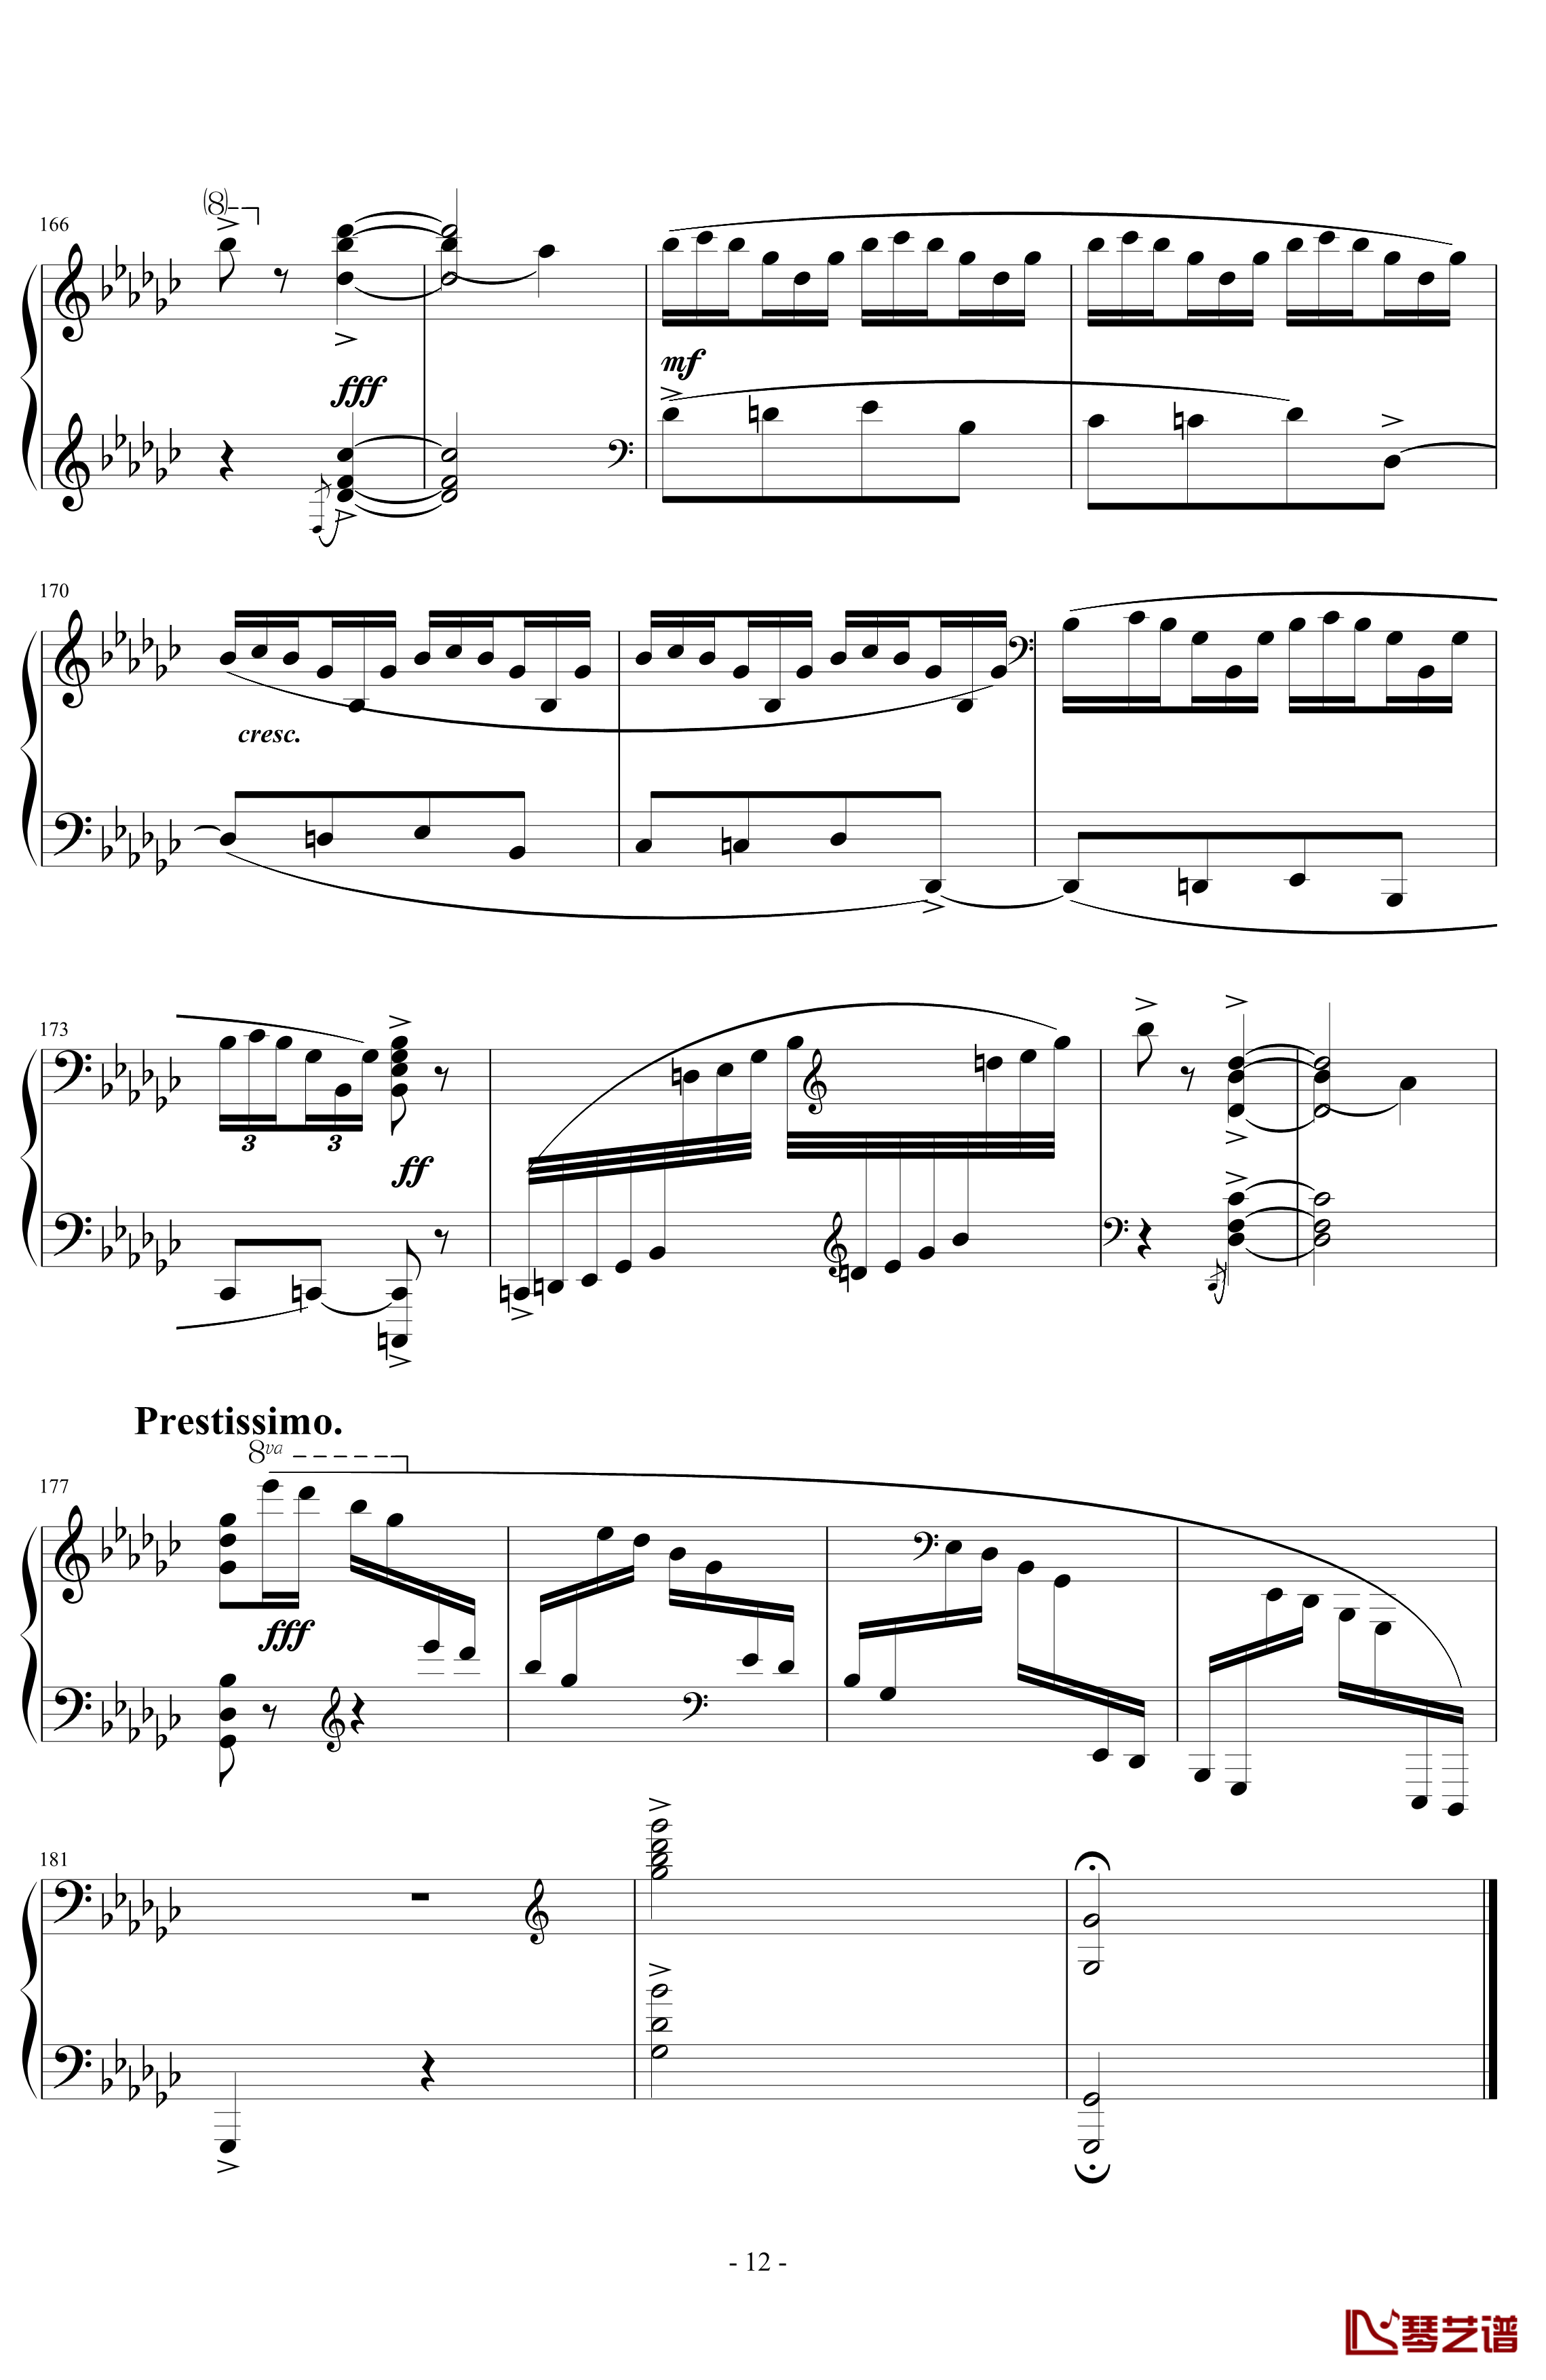 《练习曲Op.25 No.3》钢琴谱-阿连斯基-希望能为大家带来惊喜12